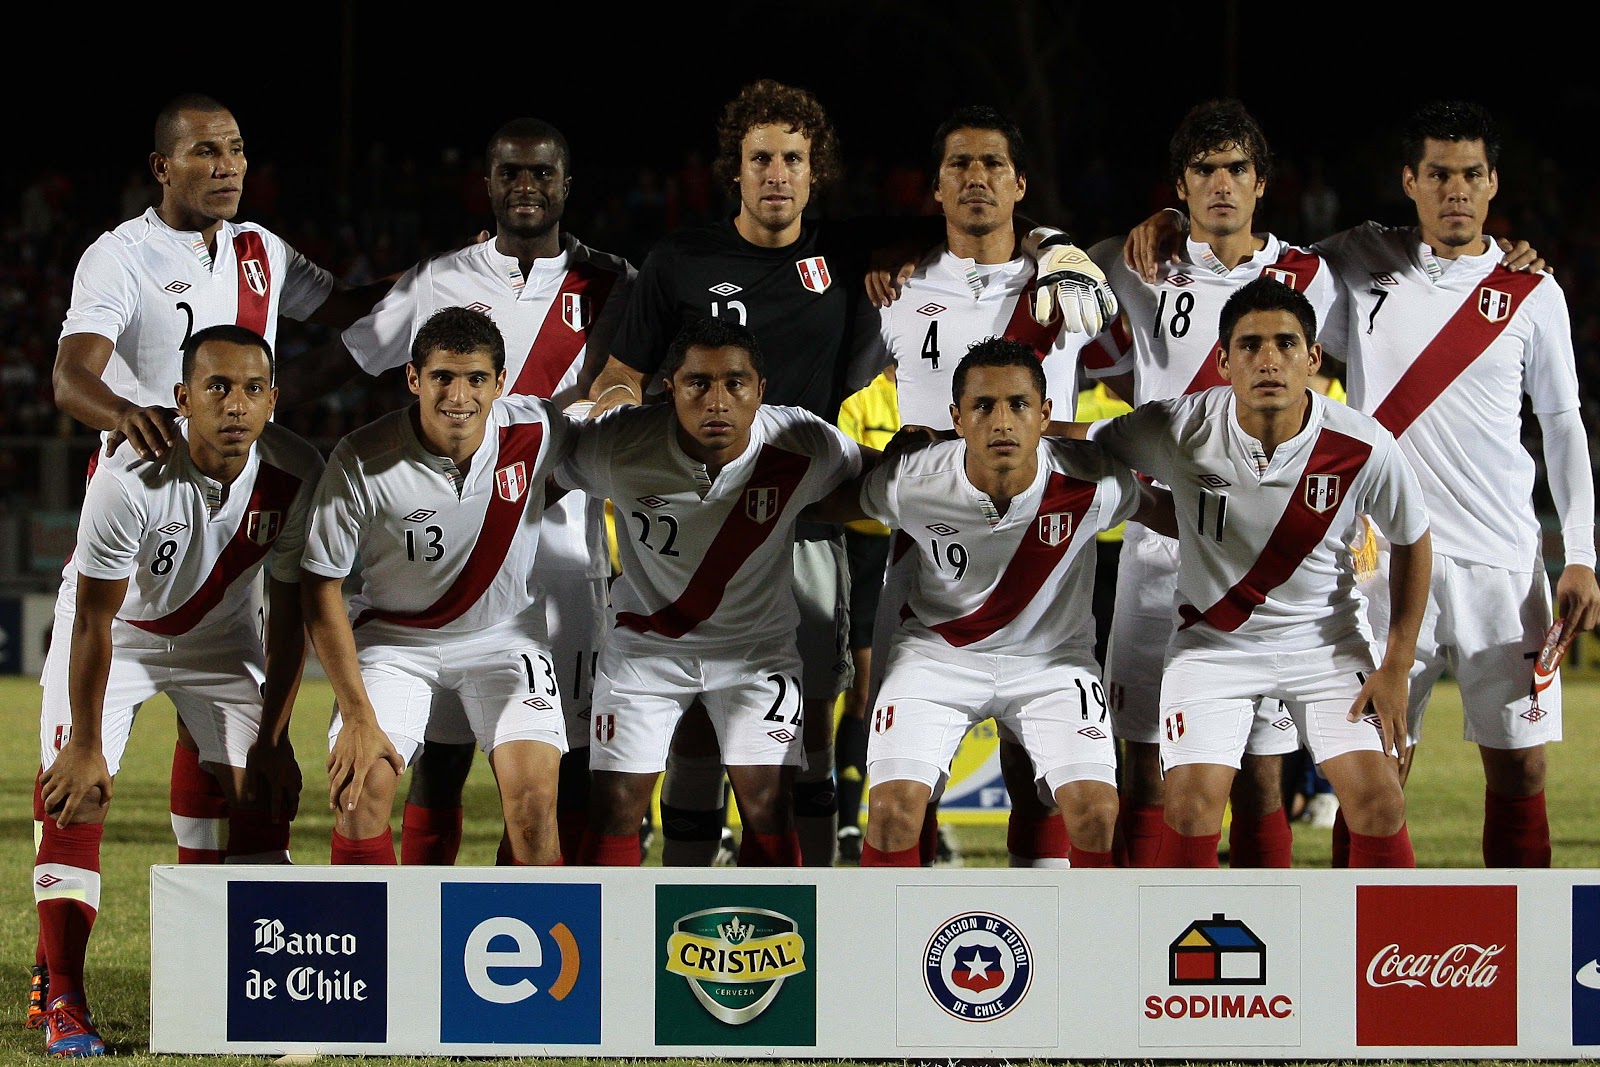 Formación de Perú ante Chile, Copa del Pacífico 2012, 21 de marzo